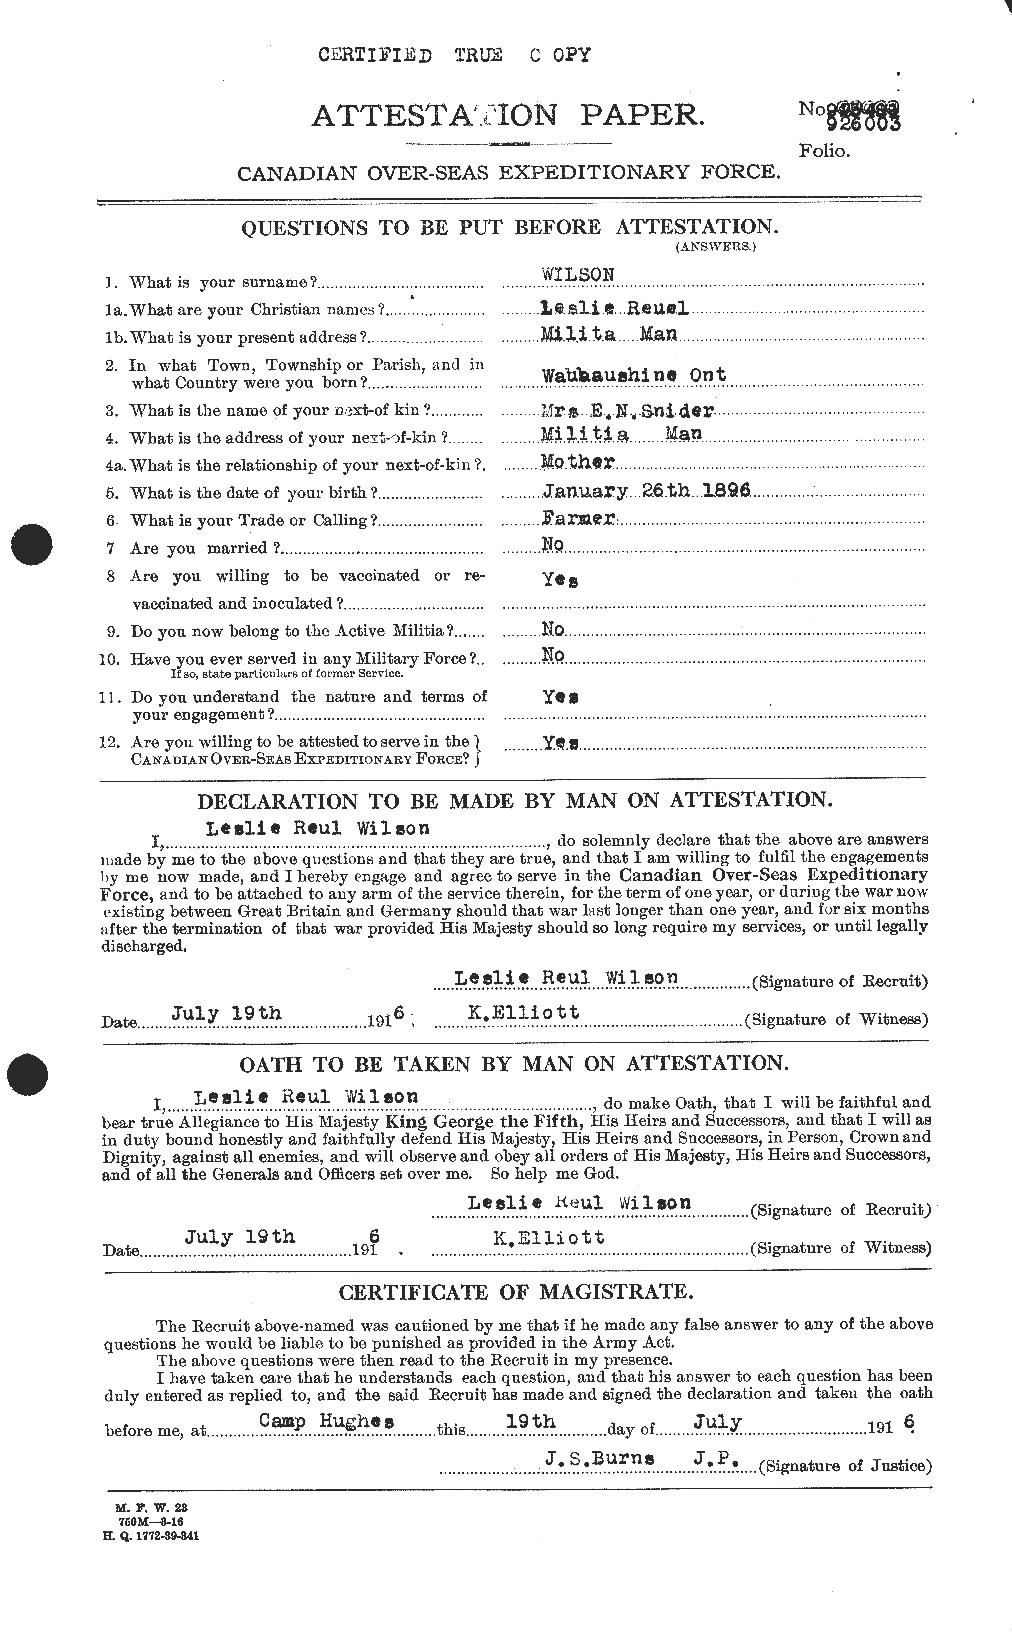 Dossiers du Personnel de la Première Guerre mondiale - CEC 678650a